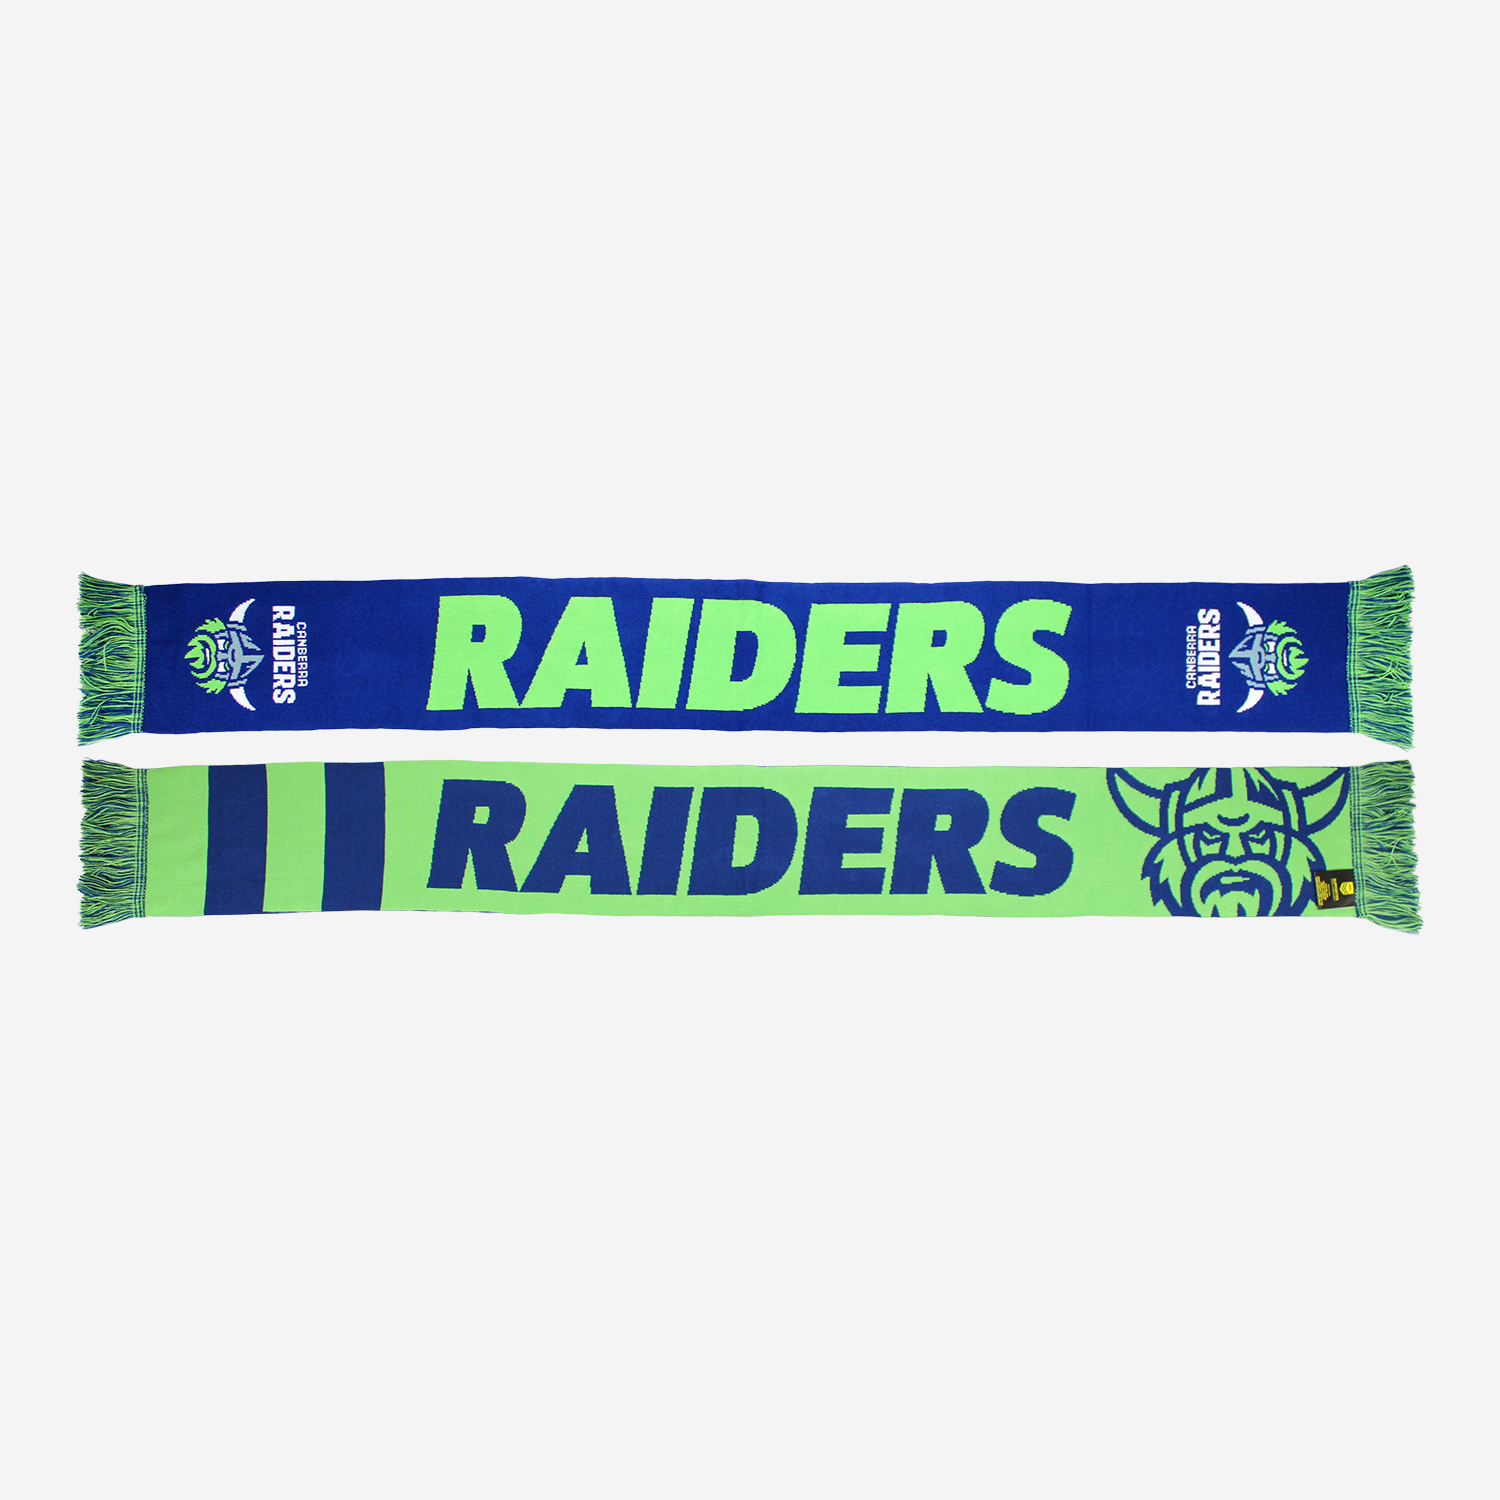 Raiders defender scarf